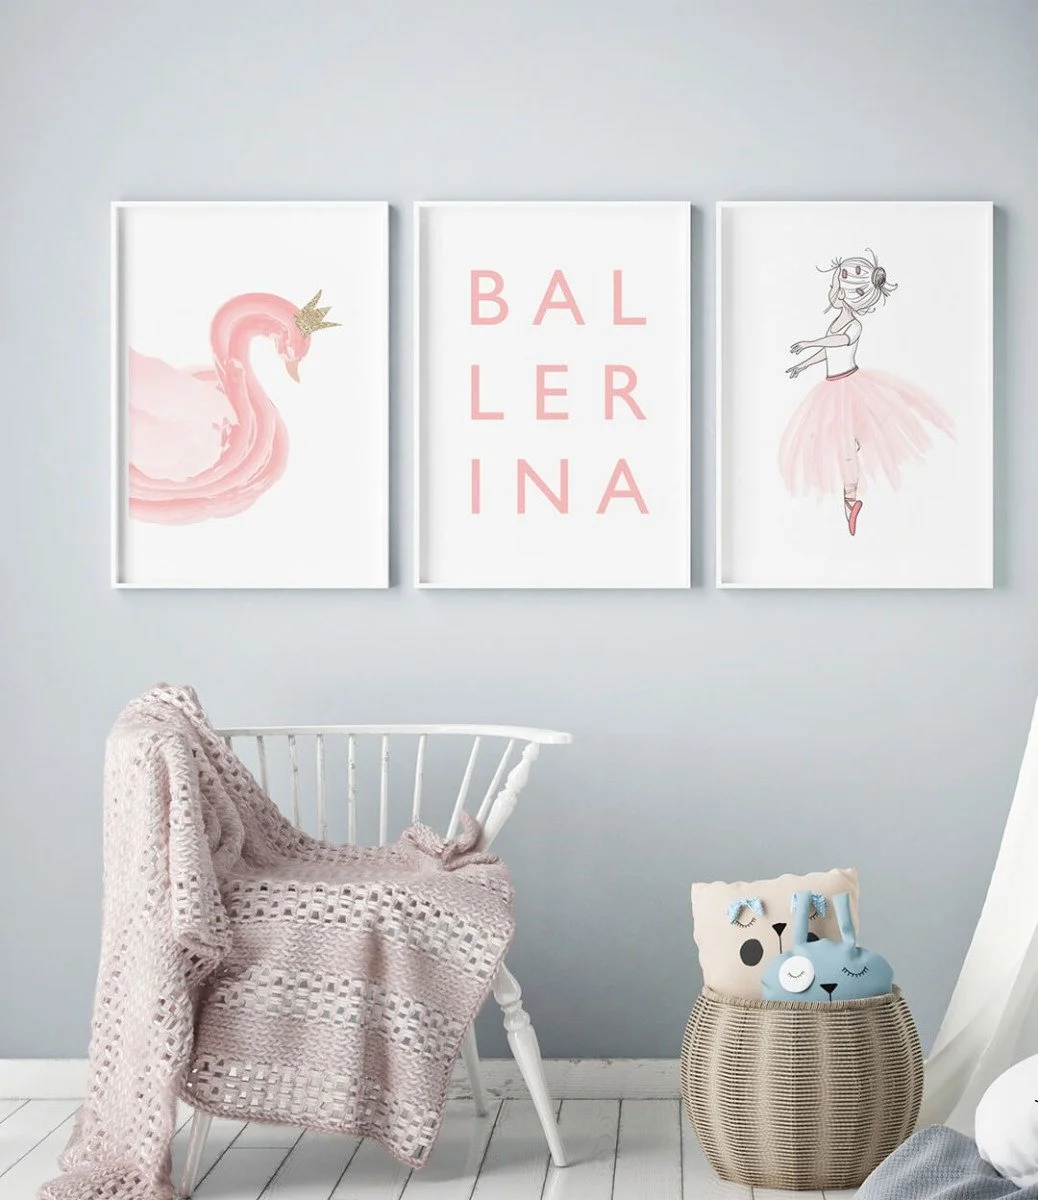 مجموعة من 3 جداريات - البجعة الراقصة الوردية من سويت بي